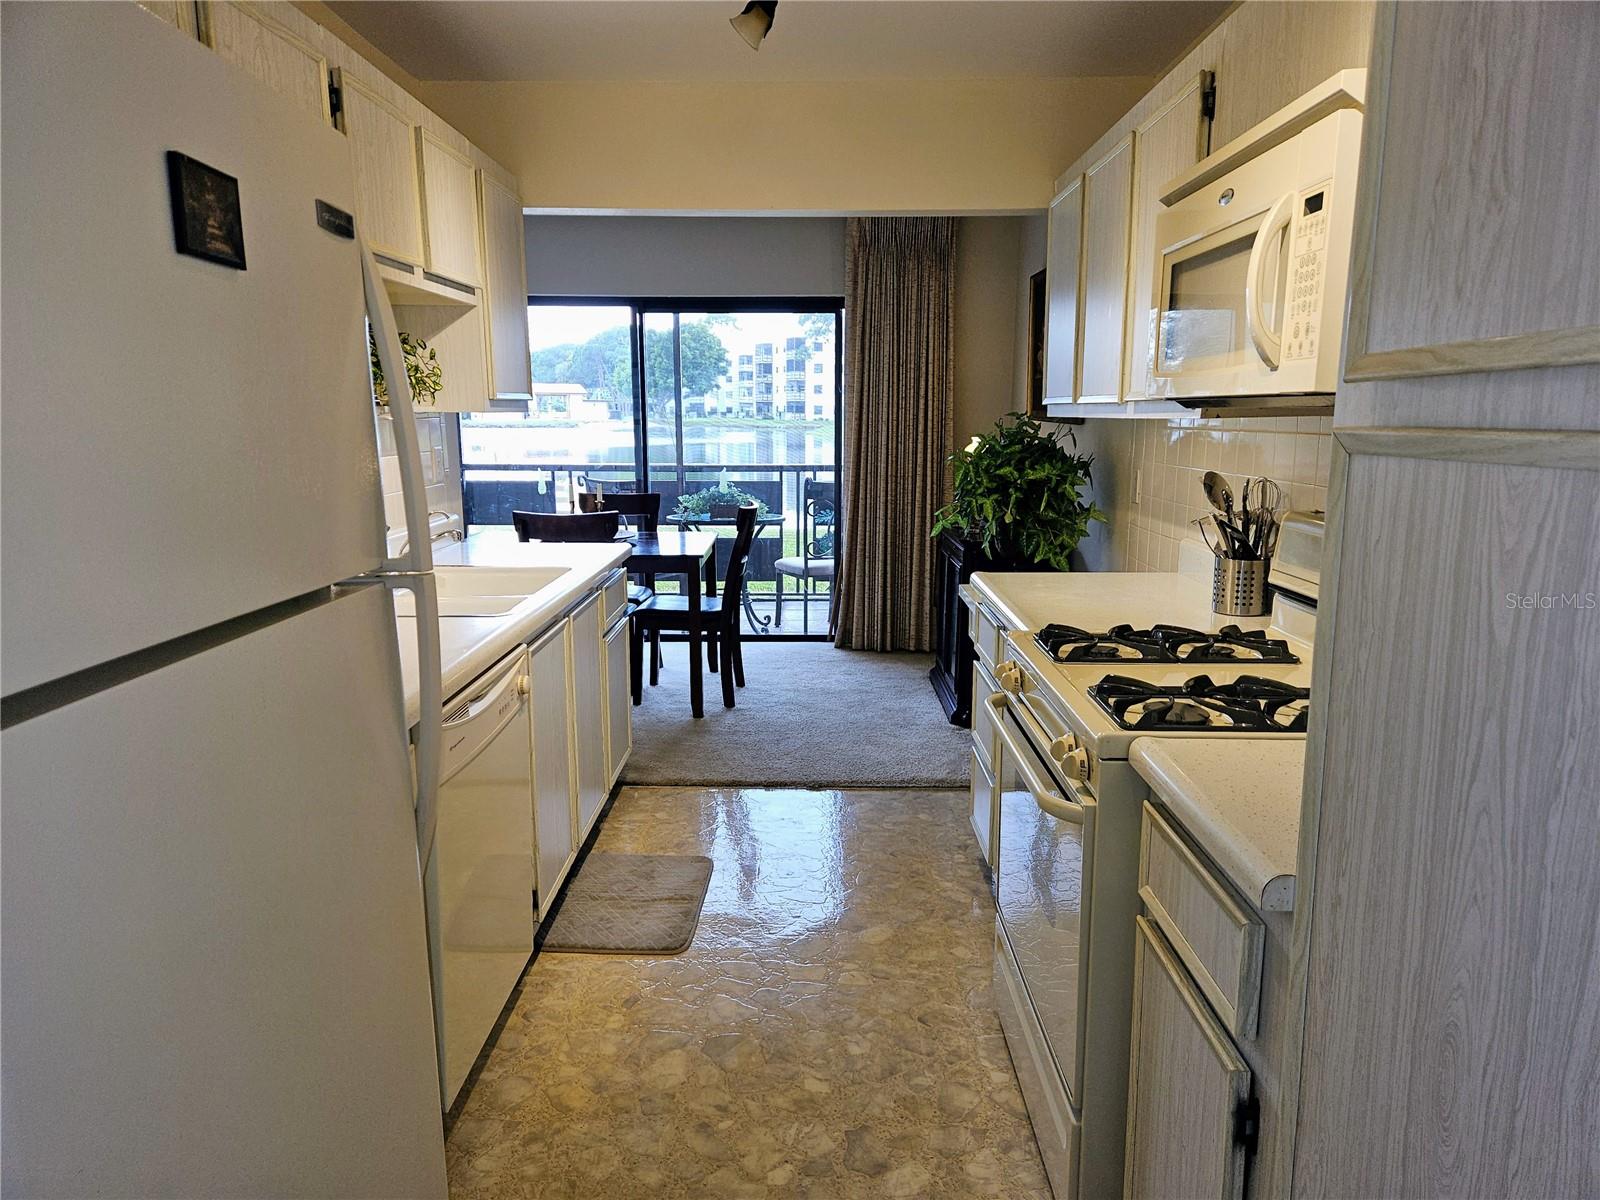 White Kitchen with White Appliances, Pantry Space